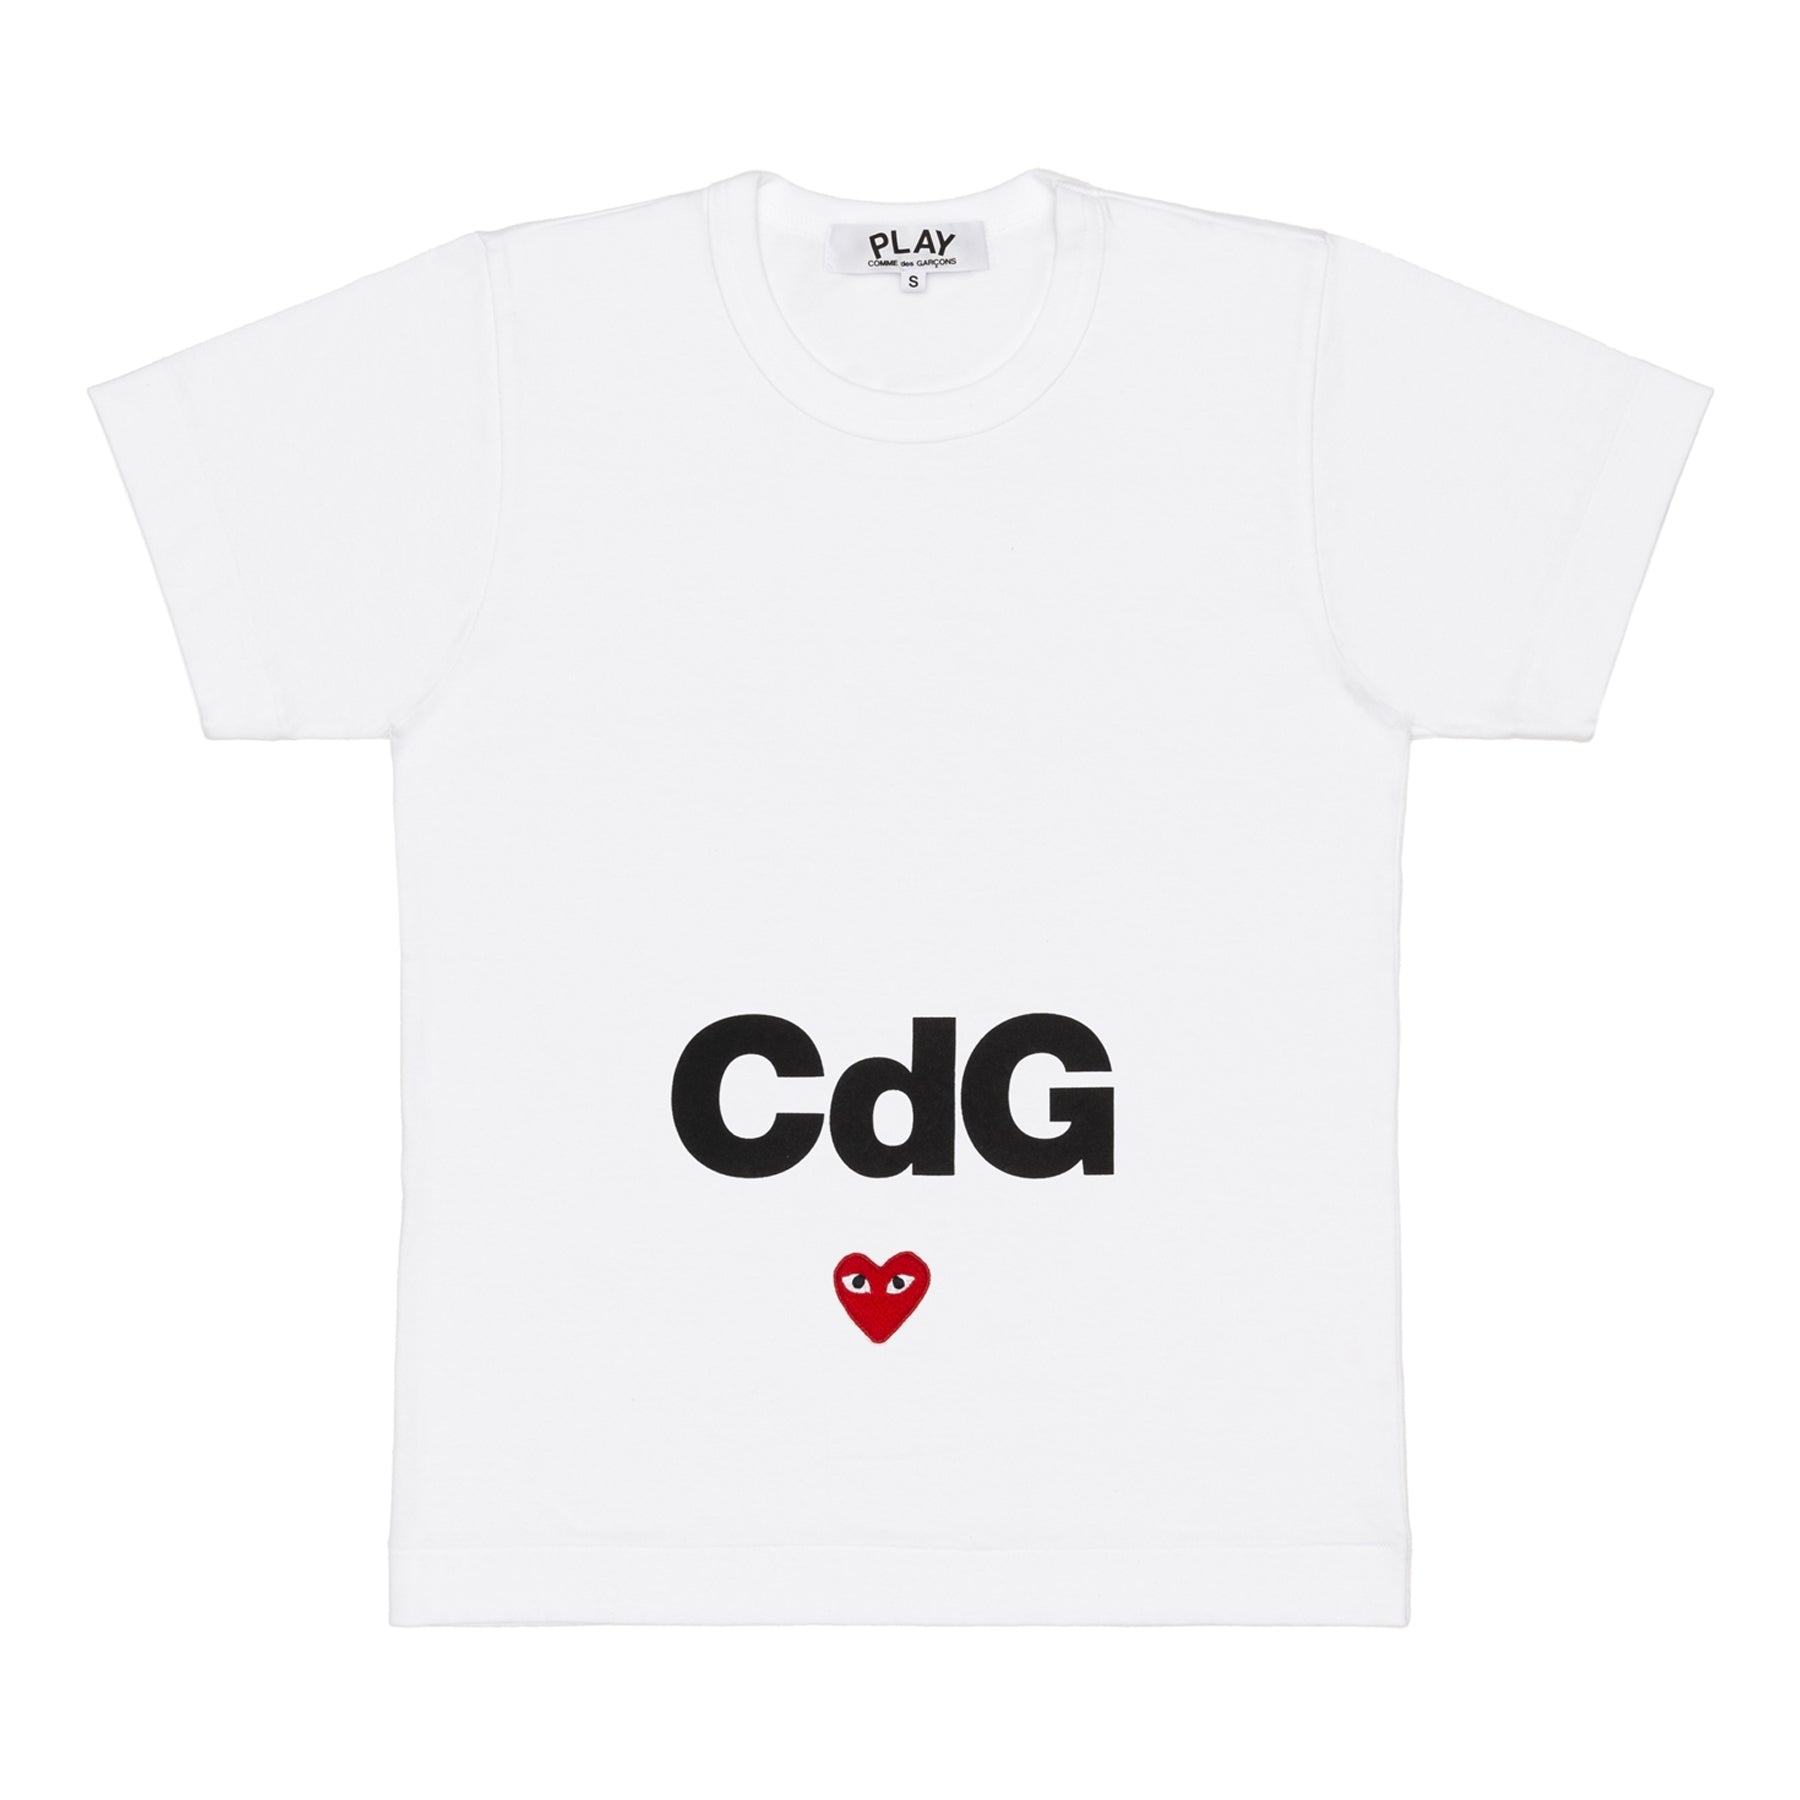 CDG PLAY - Cdg X Play T-Shirt - (White) view 1